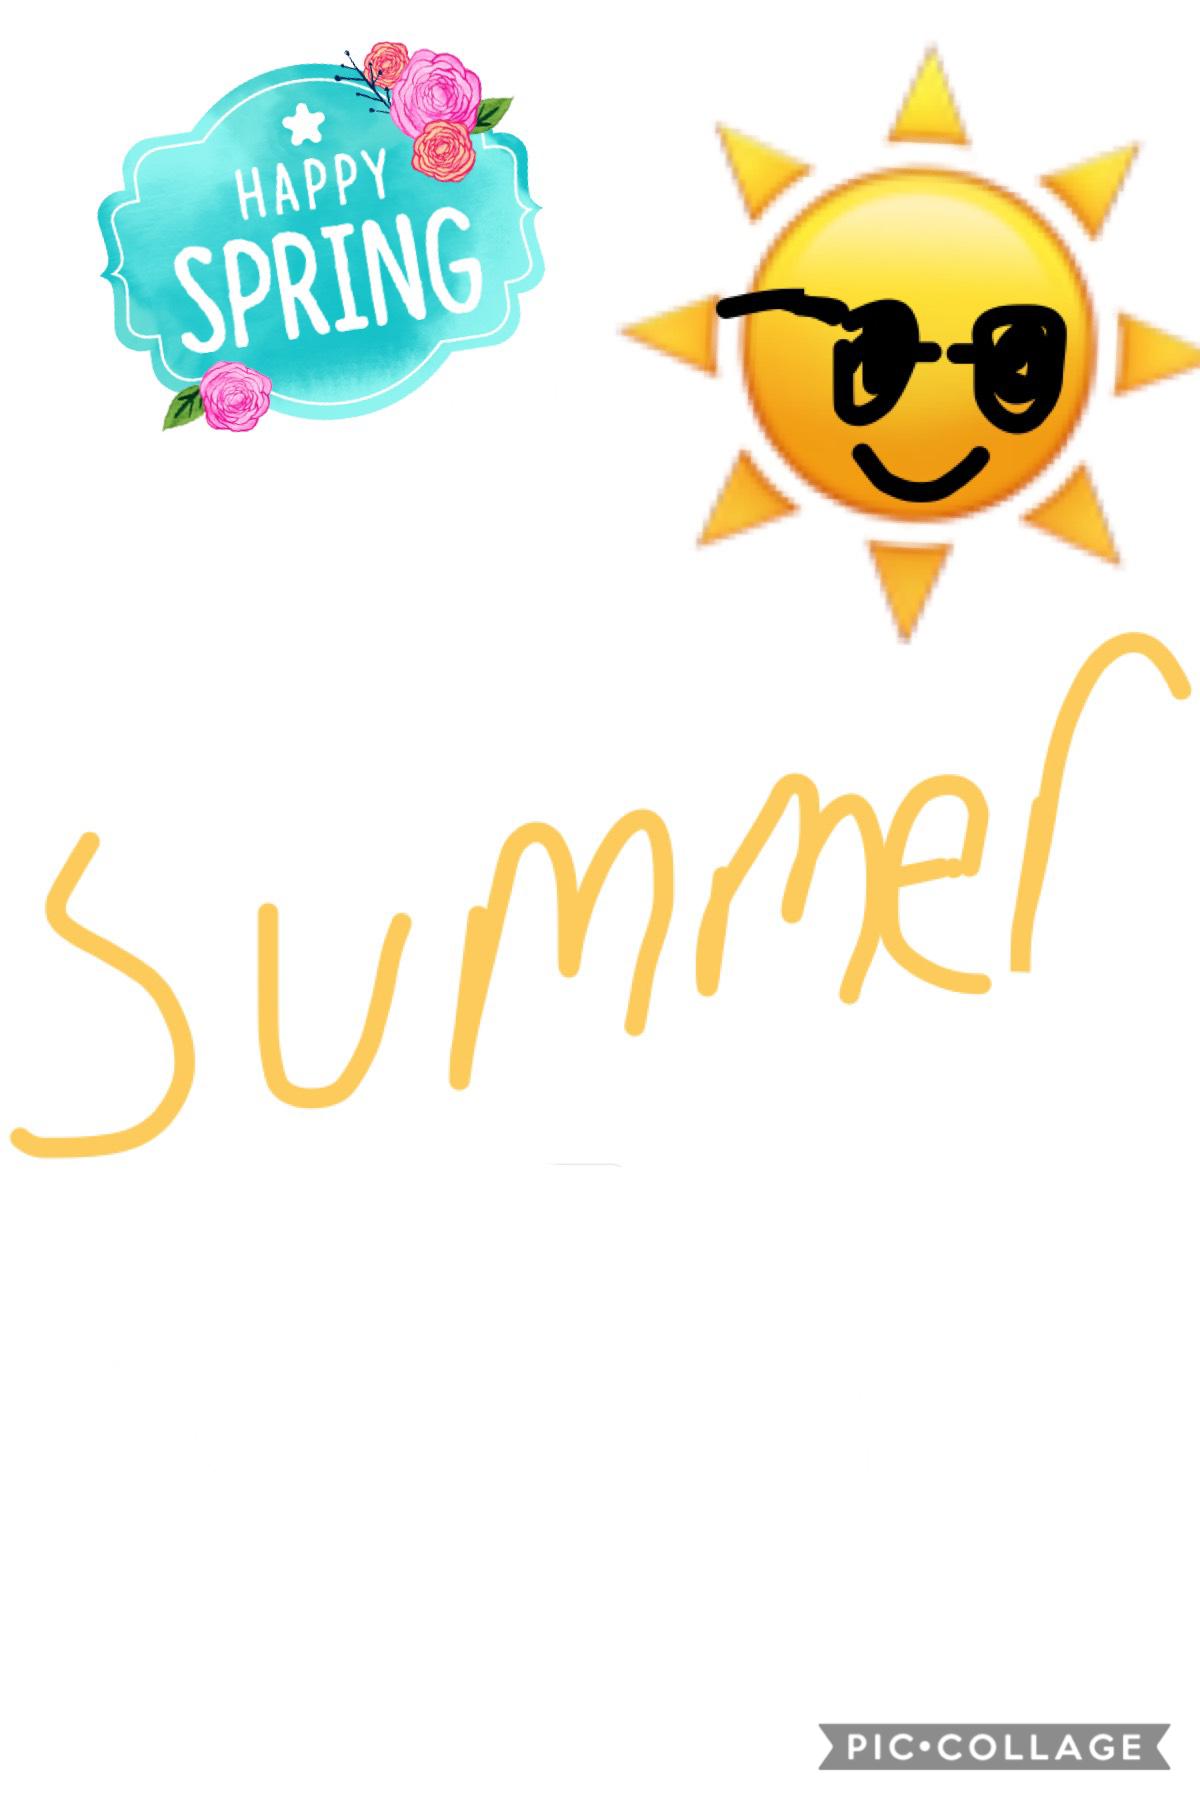 Summer!!!
